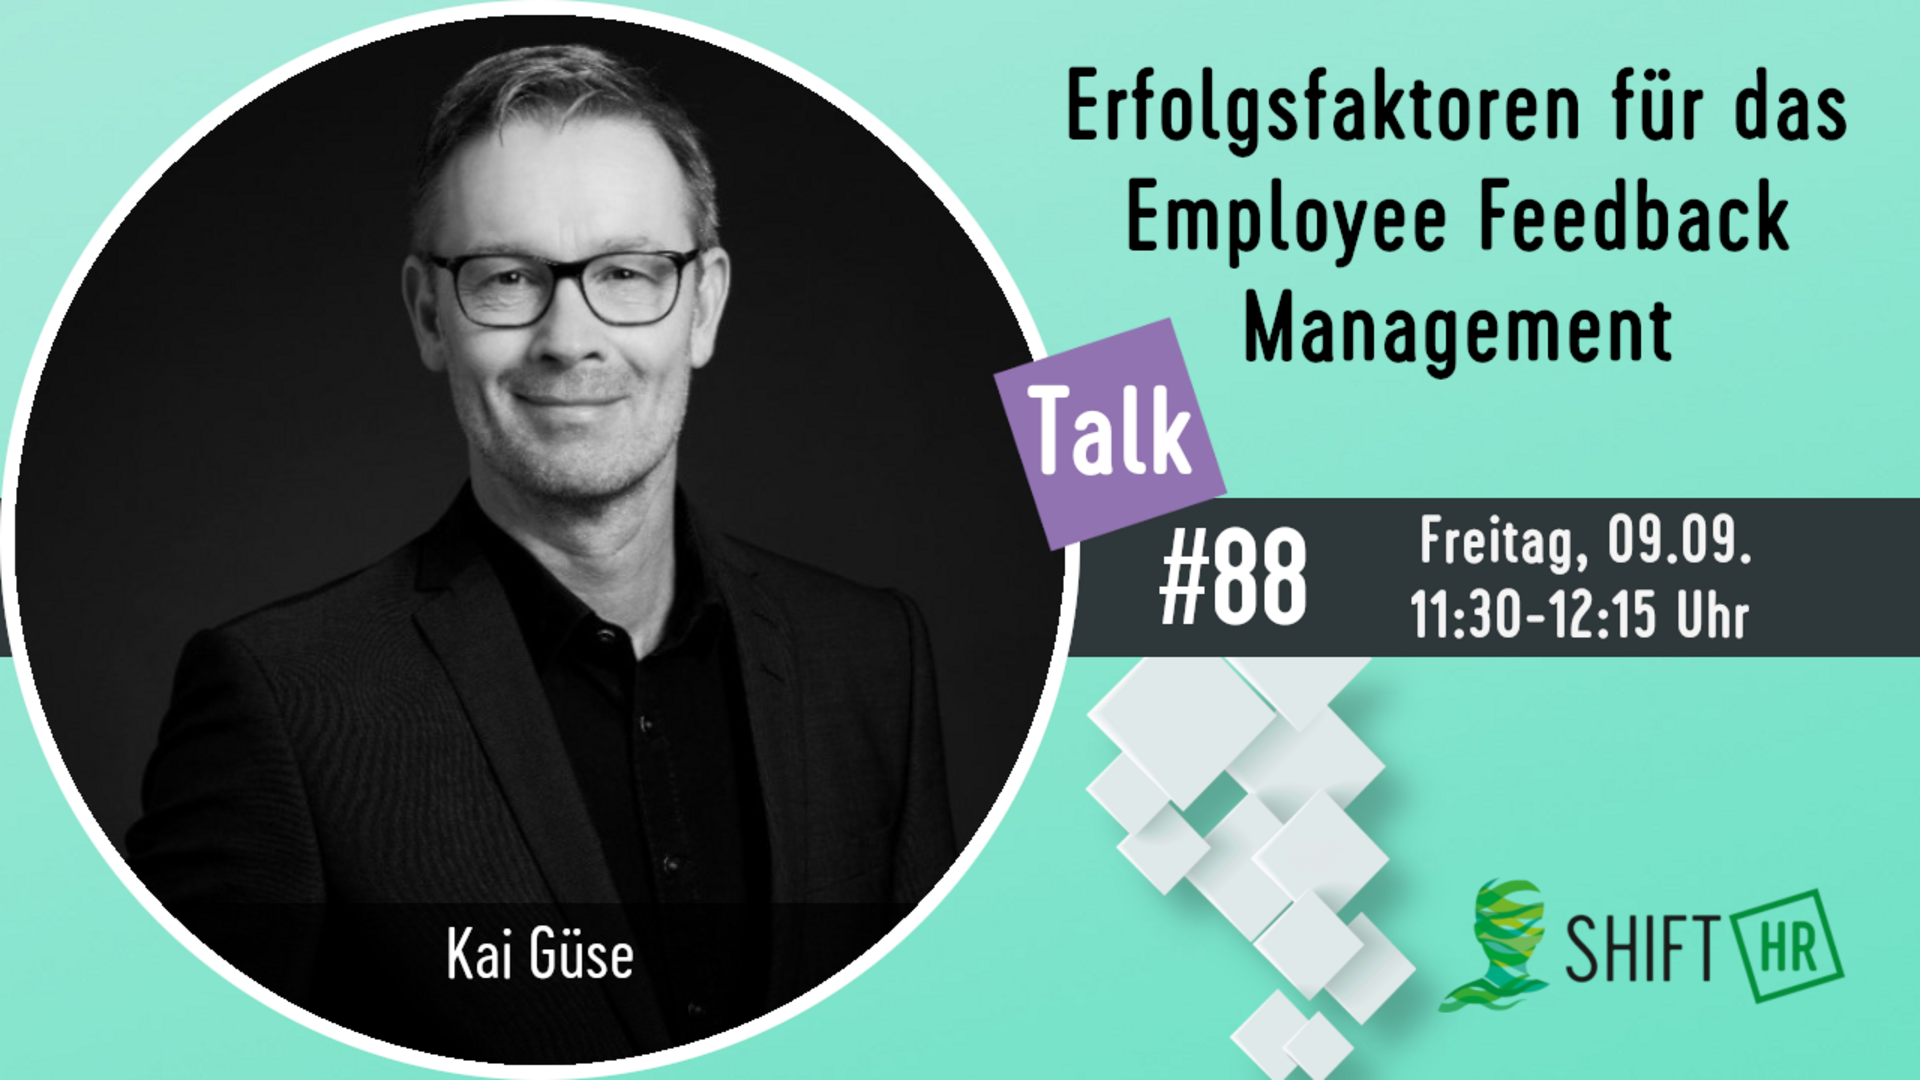 Im Gespräch mit Kai Güse zu den Erfolgsfaktoren für das Employee Feedback Management